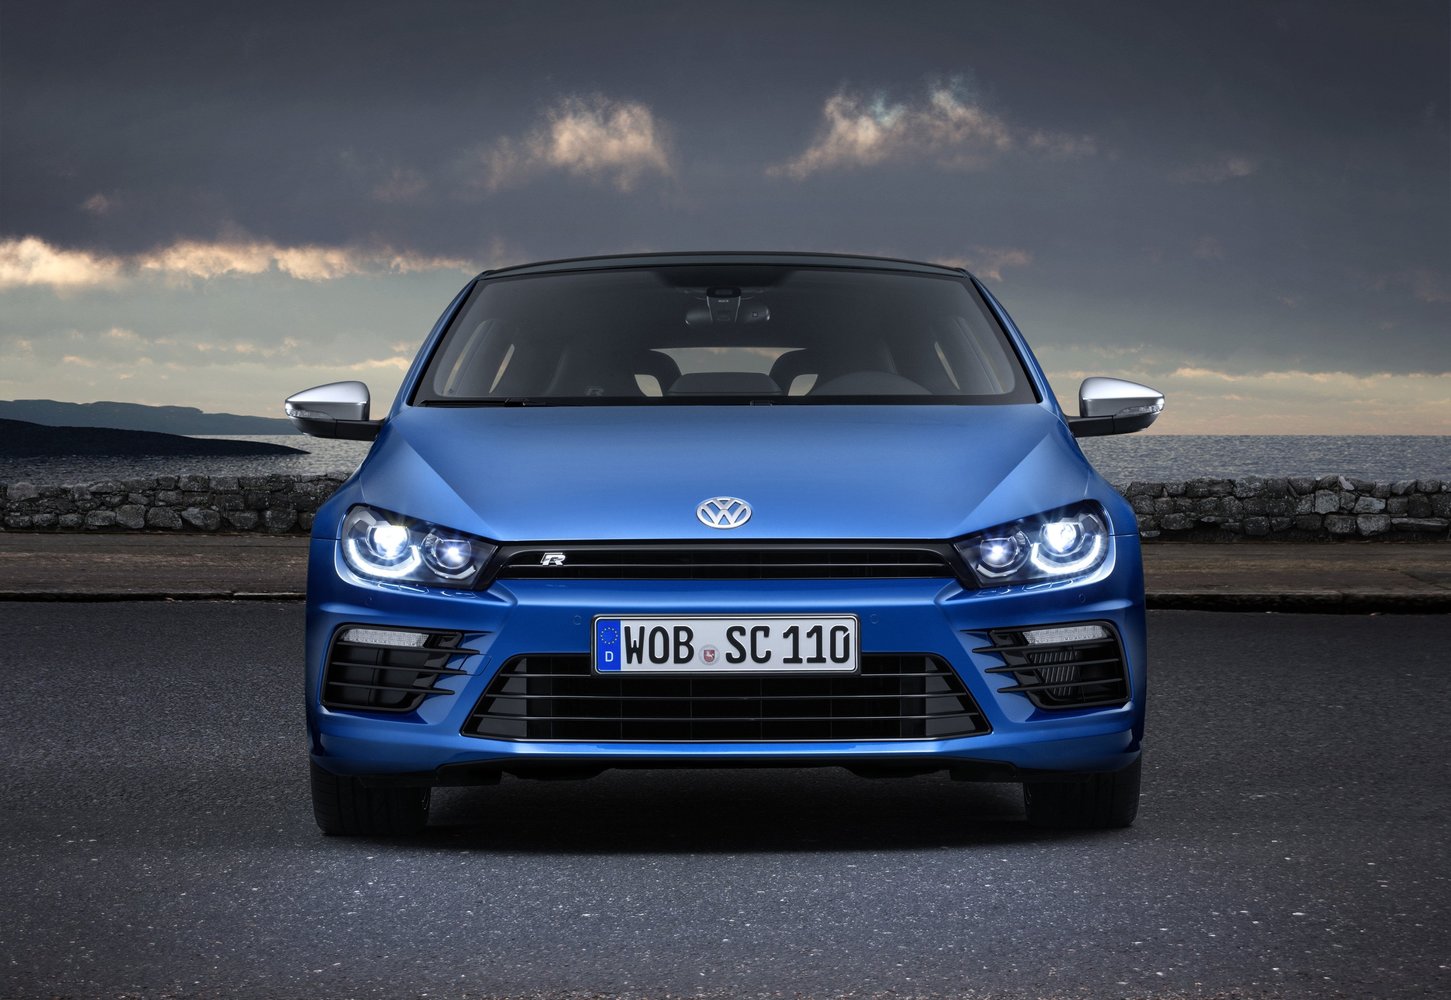 хэтчбек 3 дв. Volkswagen Scirocco R 2014 - 2016г выпуска модификация 2.0 AMT (280 л.с.)